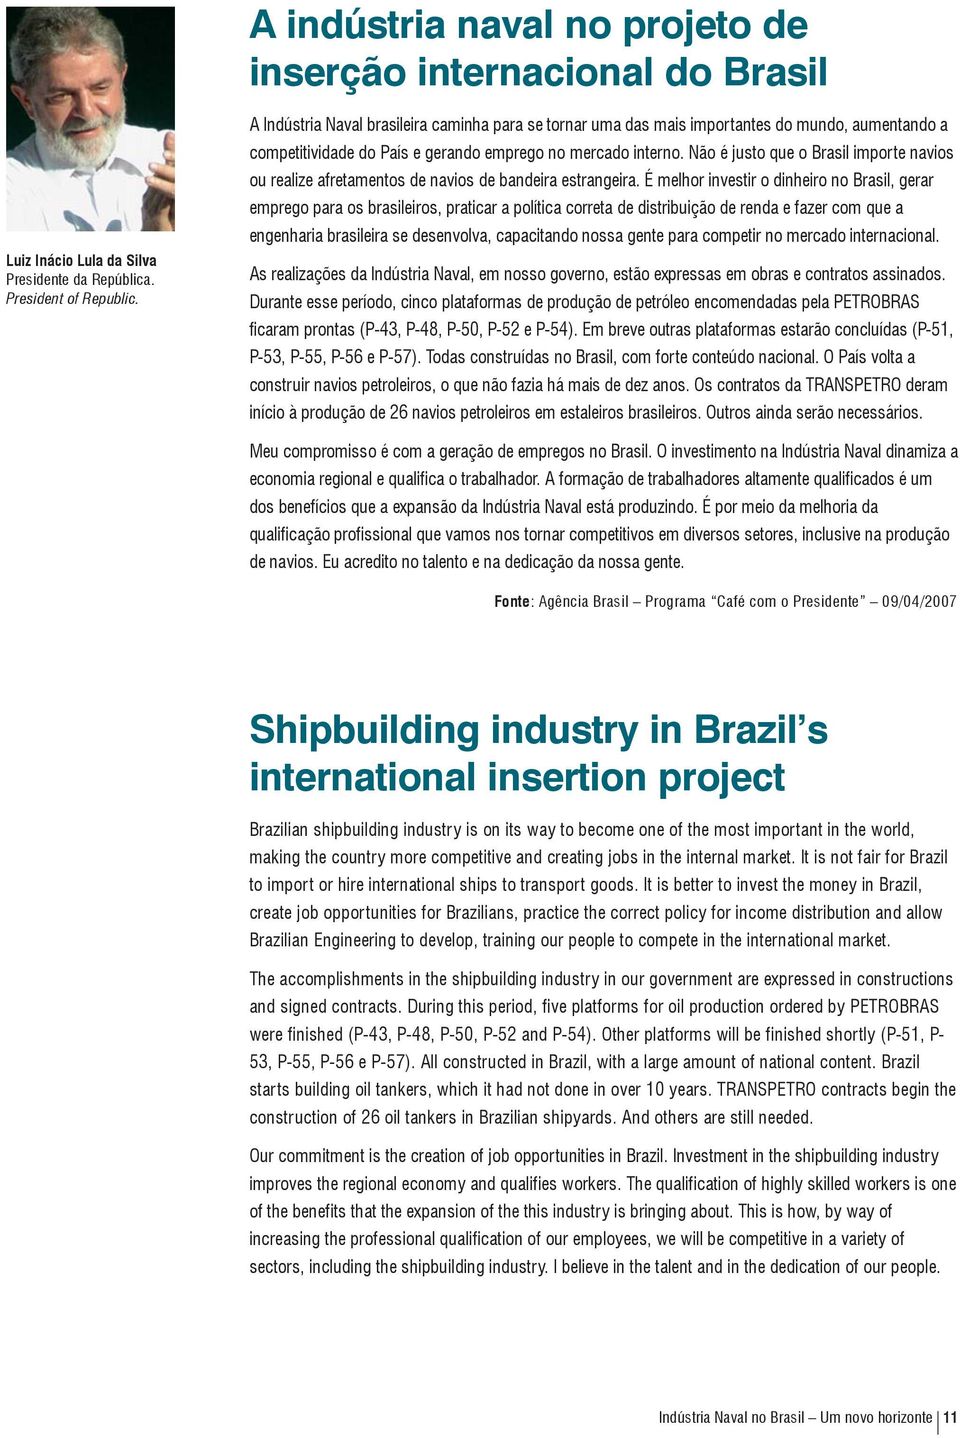 Não é justo que o Brasil importe navios ou realize afretamentos de navios de bandeira estrangeira.